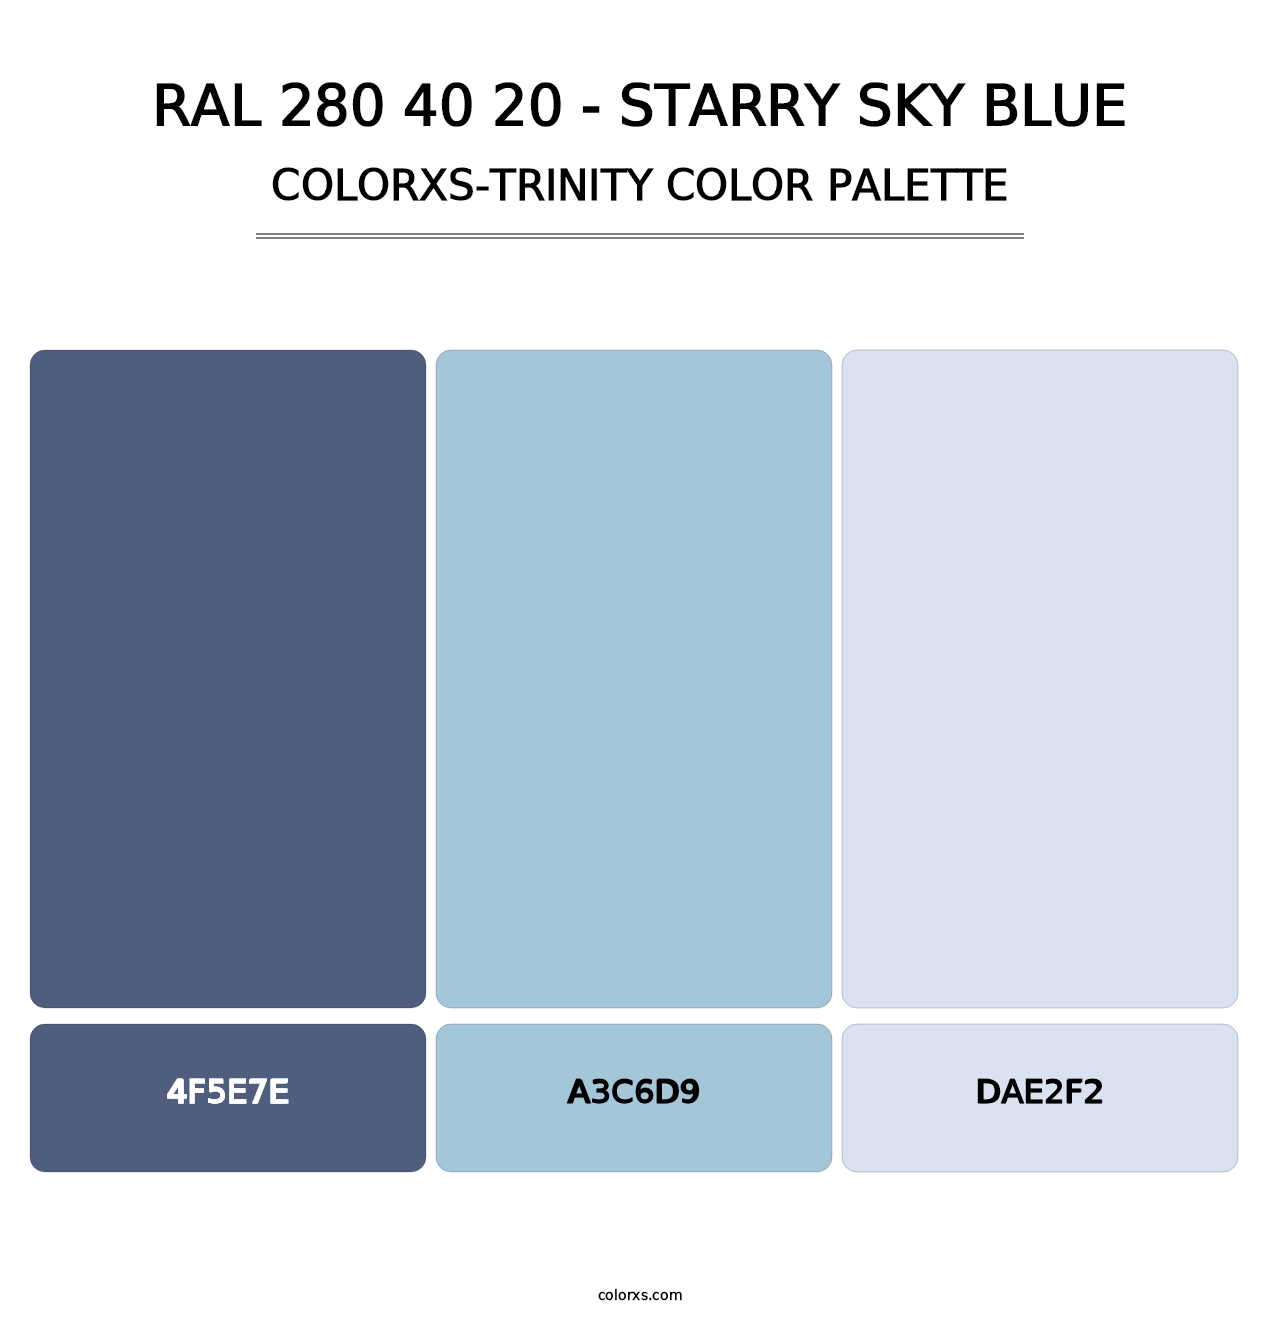 RAL 280 40 20 - Starry Sky Blue - Colorxs Trinity Palette